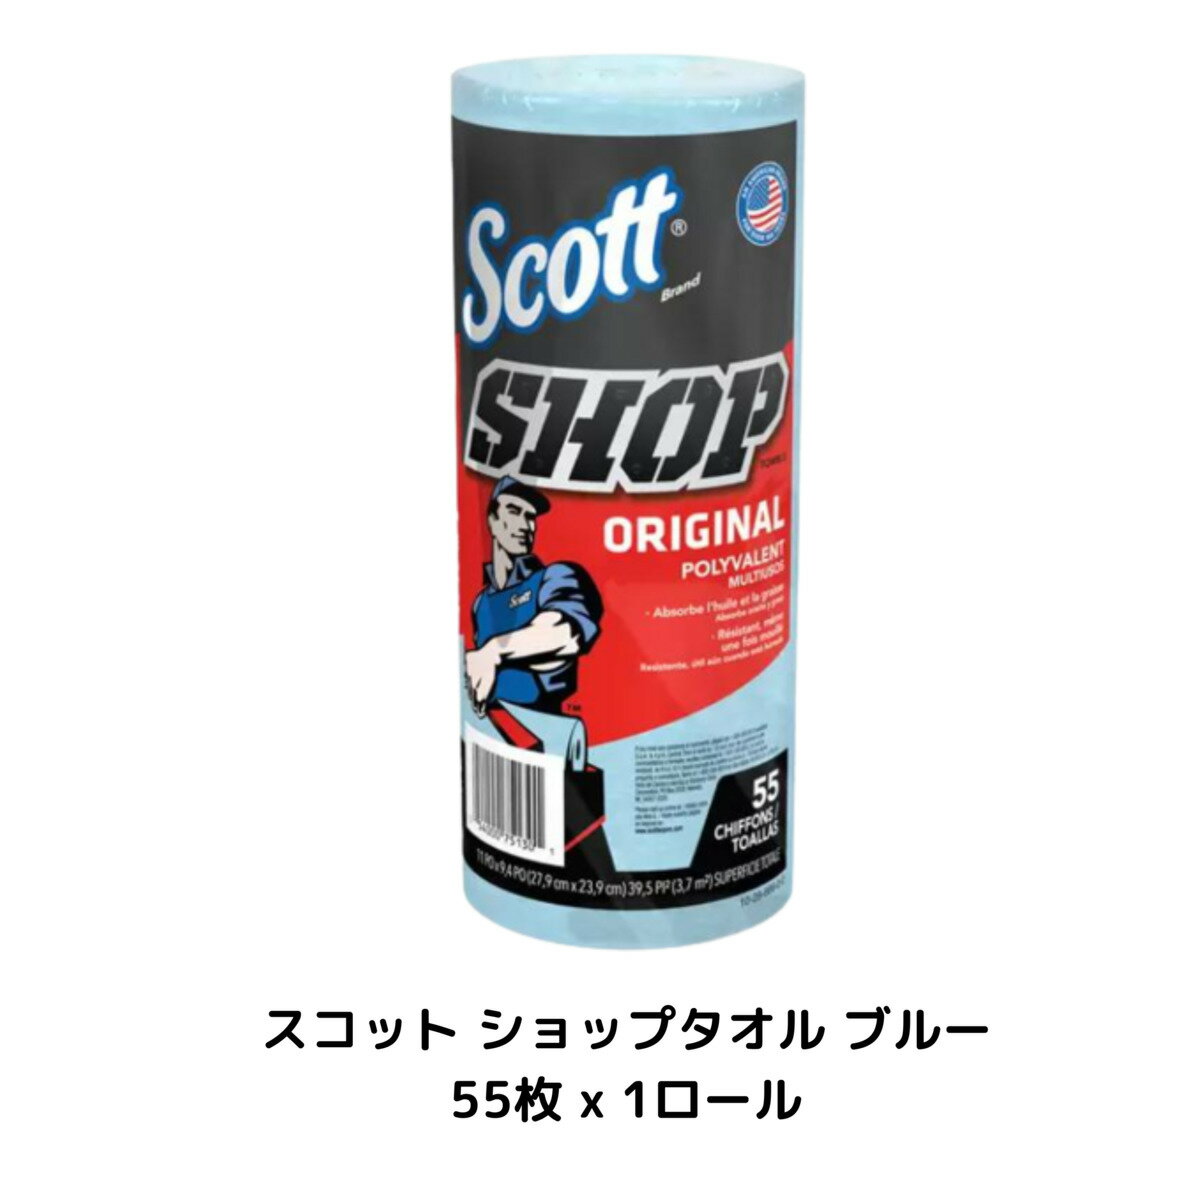 スコット ショップタオル ブルー 55枚 x 1ロール コストコ 1509965